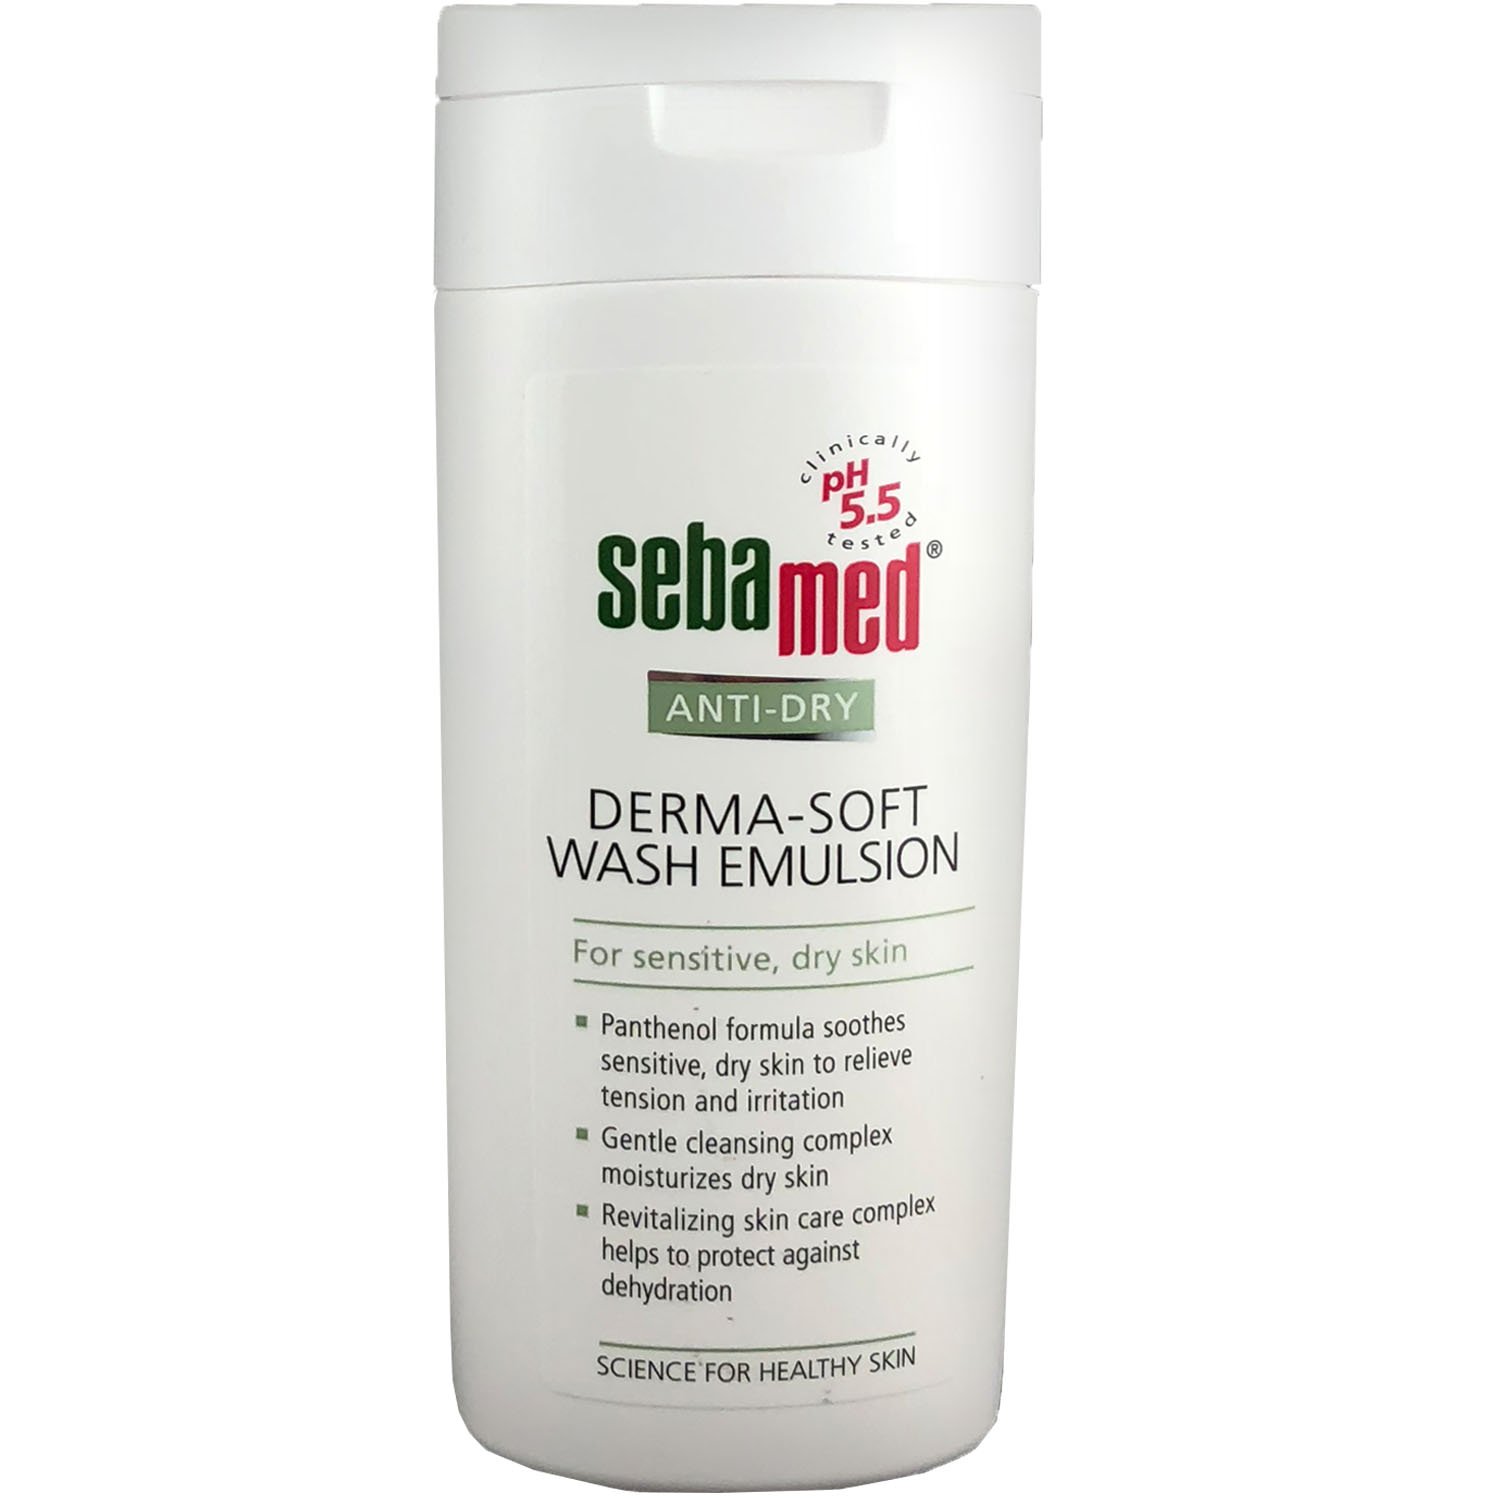 Эмульсия для умывания Sebamed Anti-Dry для сухой и чувствительной кожи, 200 мл - фото 1